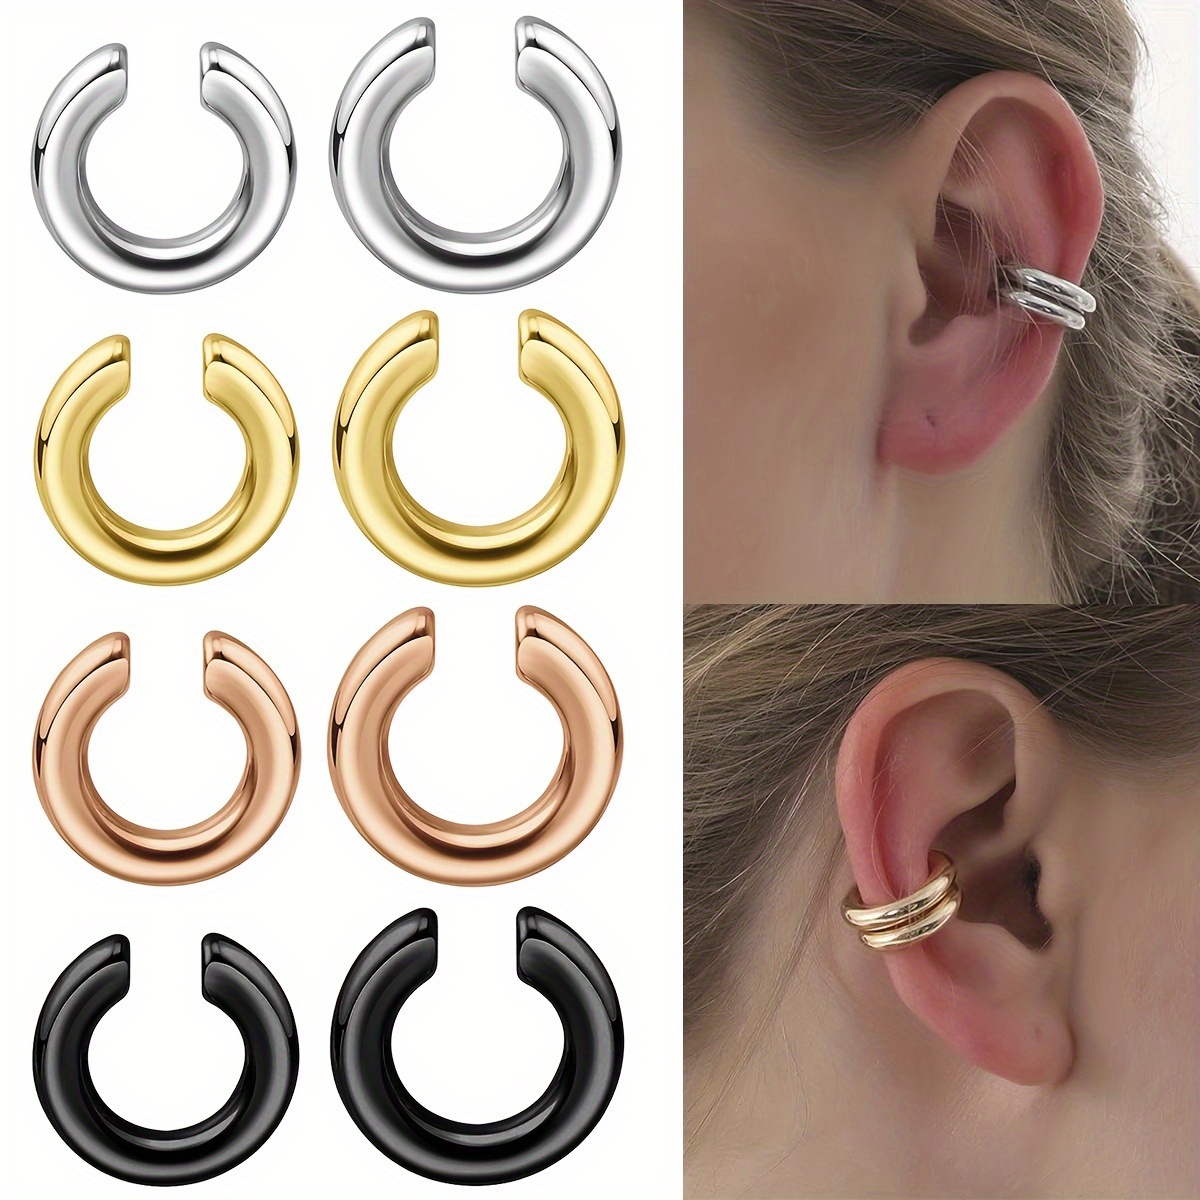 Ear Cuff Cartilage Clip On Earrings Set Stainless Steel Ear Clip